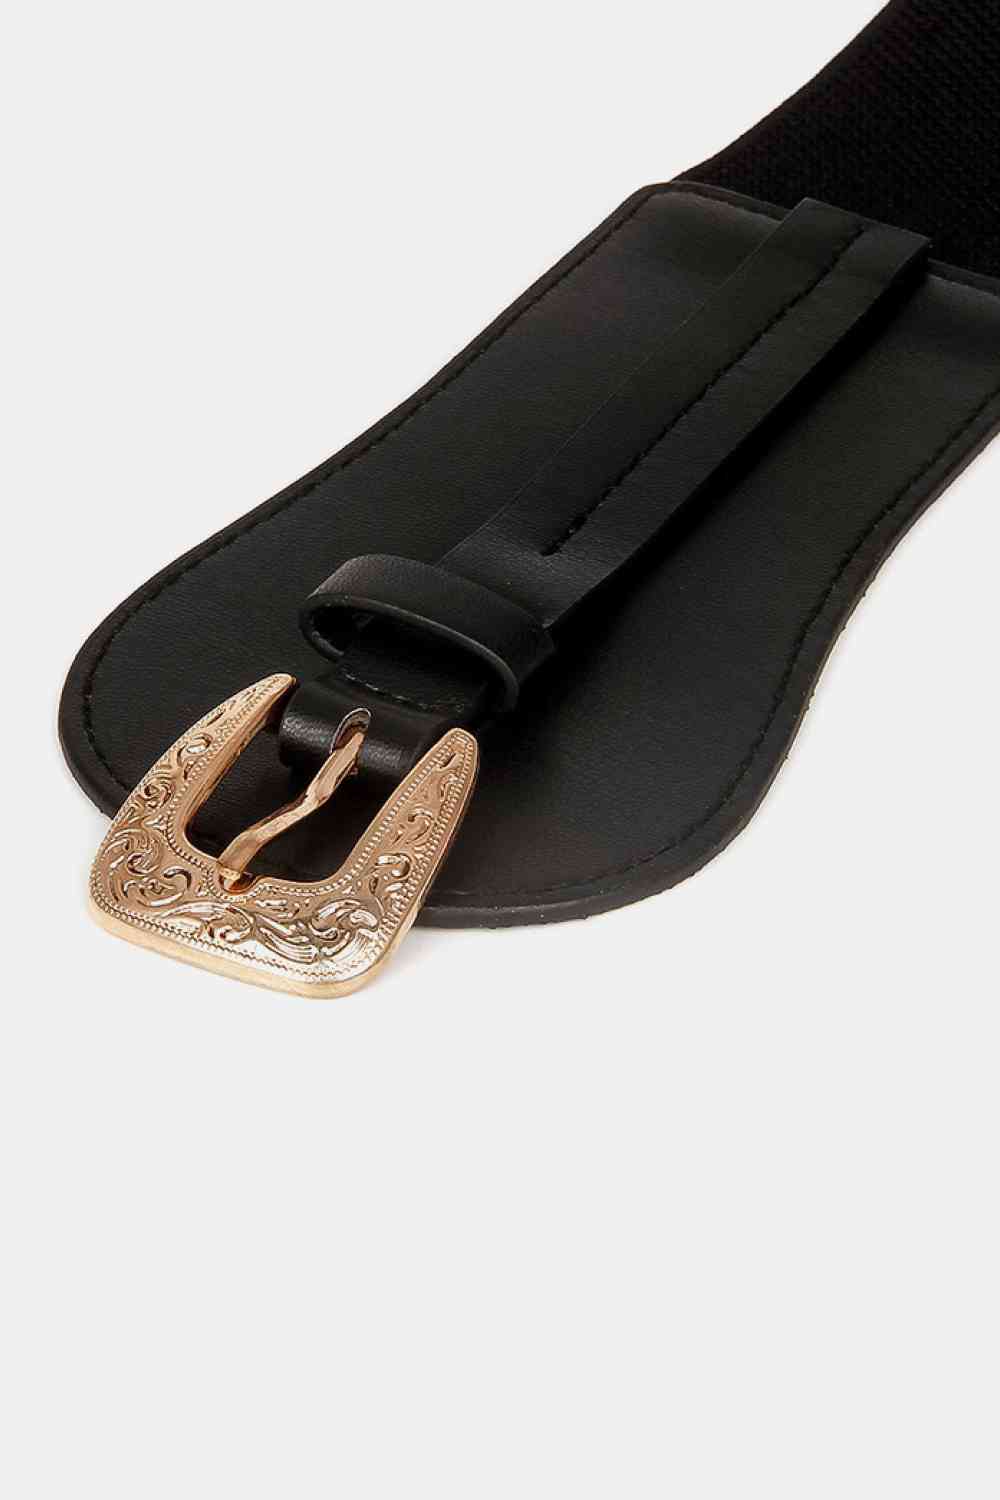 Cinturón ancho elástico con hebilla de aleación.